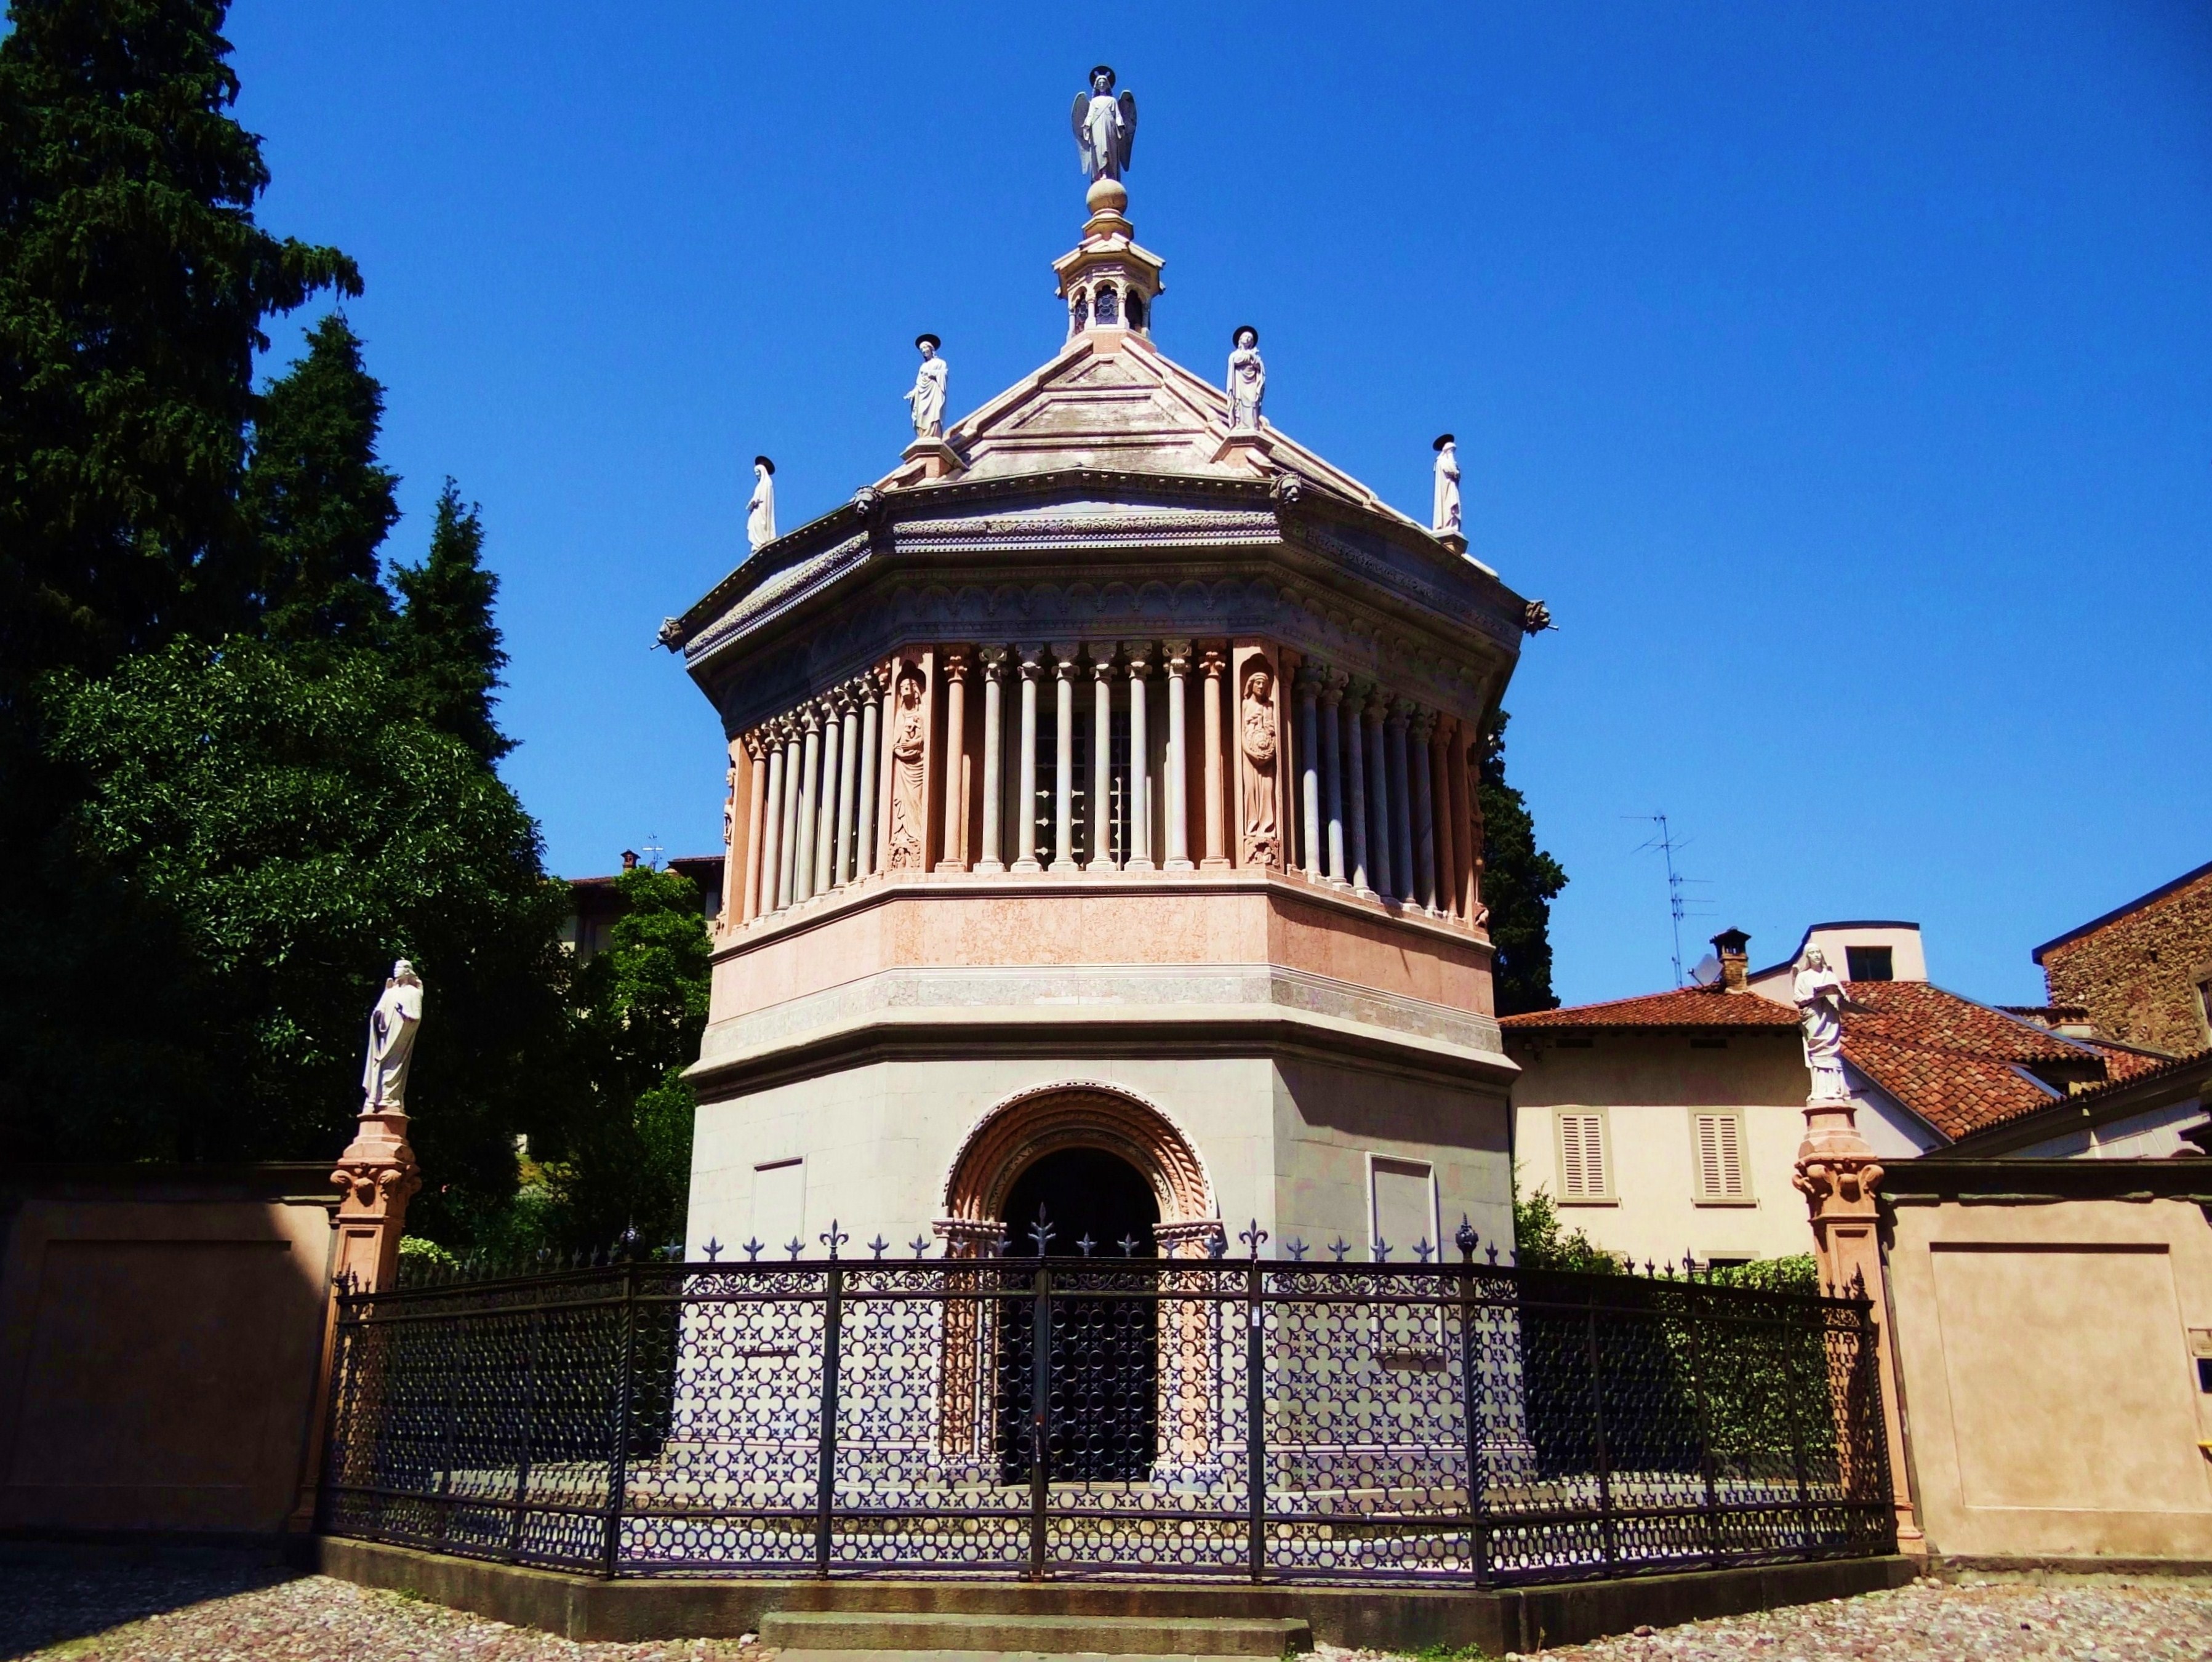 Foto: Battistero della Basilica di S. Maria Maggiore - Bergamo (Lombardy), Italia